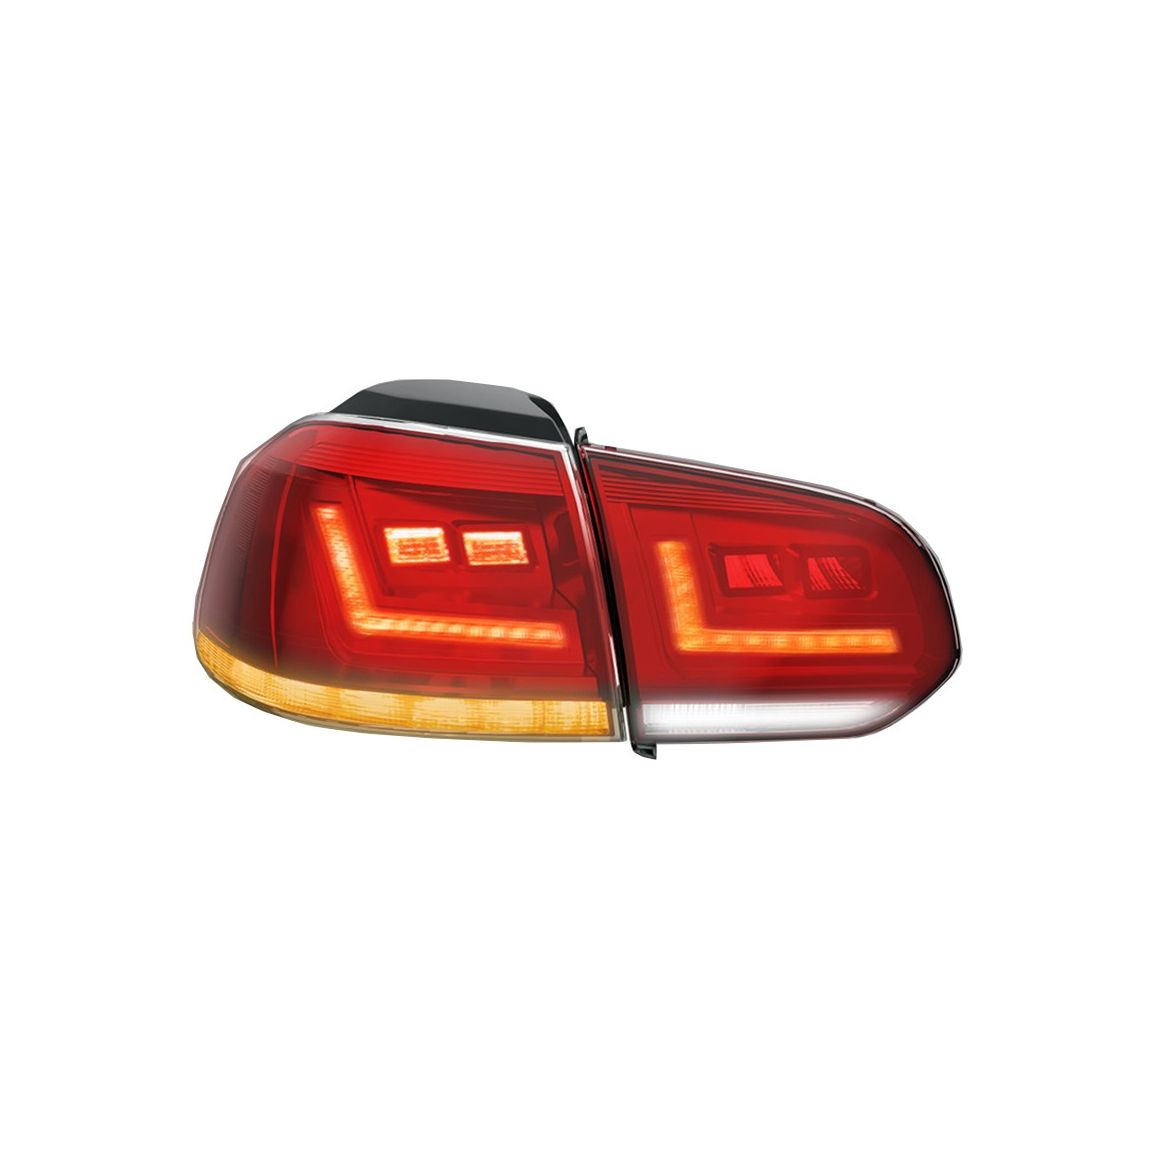 OSRAM LEDriving Rückleuchten Golf 6 LED Rückleuchten VW Golf VI -  LEDTL102-CL - rechts und links - France-Xenon